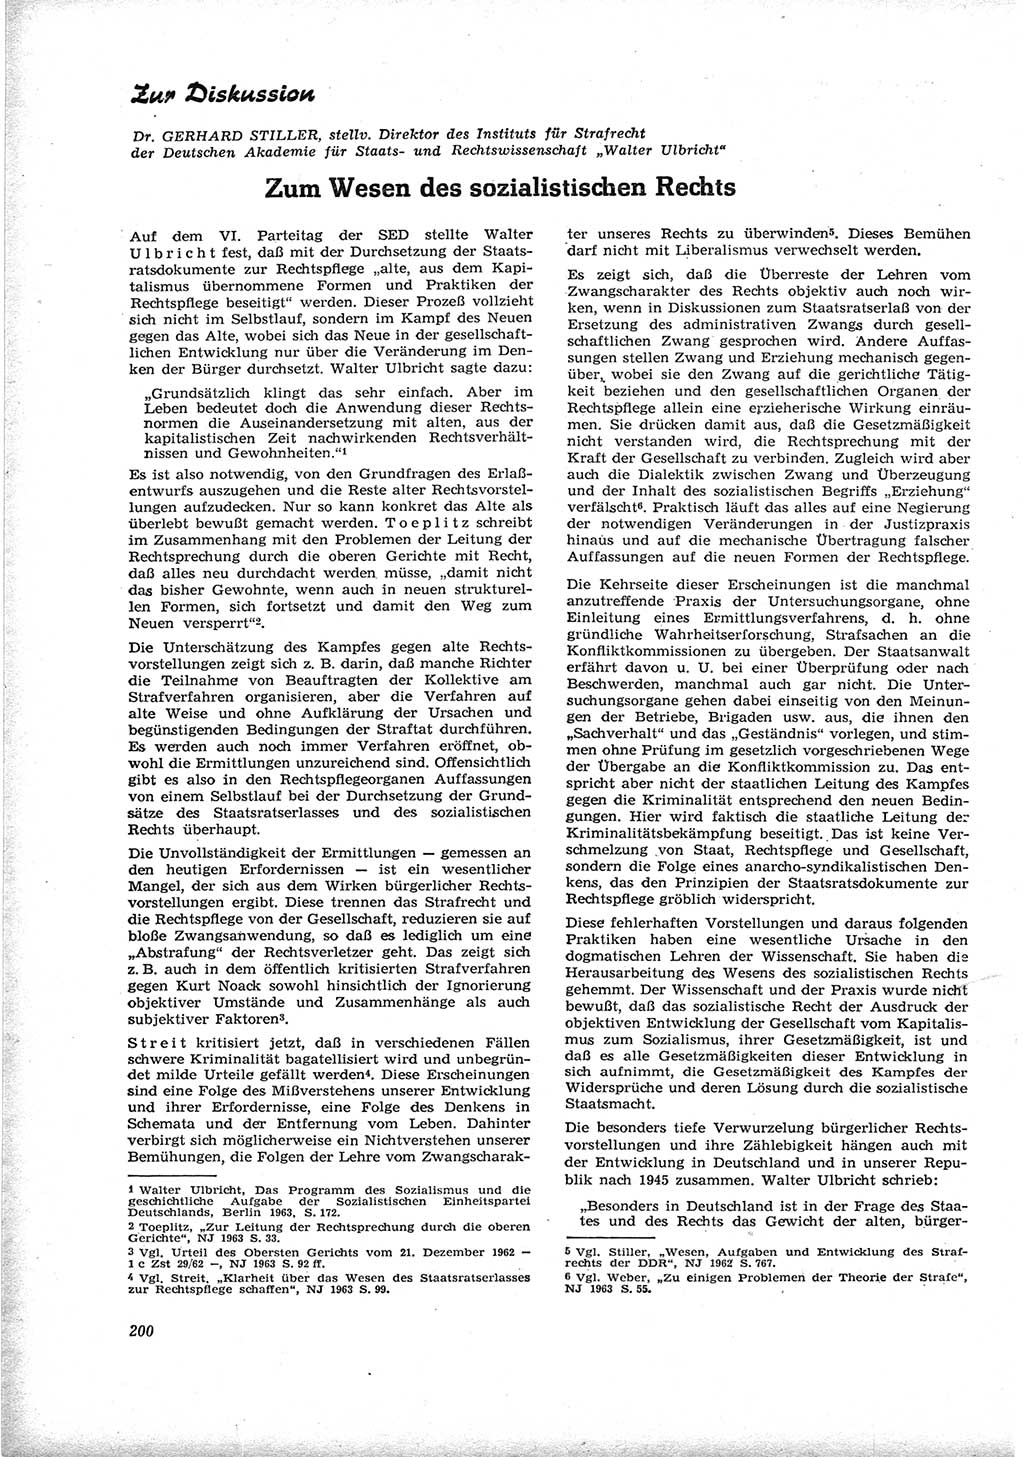 Neue Justiz (NJ), Zeitschrift für Recht und Rechtswissenschaft [Deutsche Demokratische Republik (DDR)], 17. Jahrgang 1963, Seite 200 (NJ DDR 1963, S. 200)